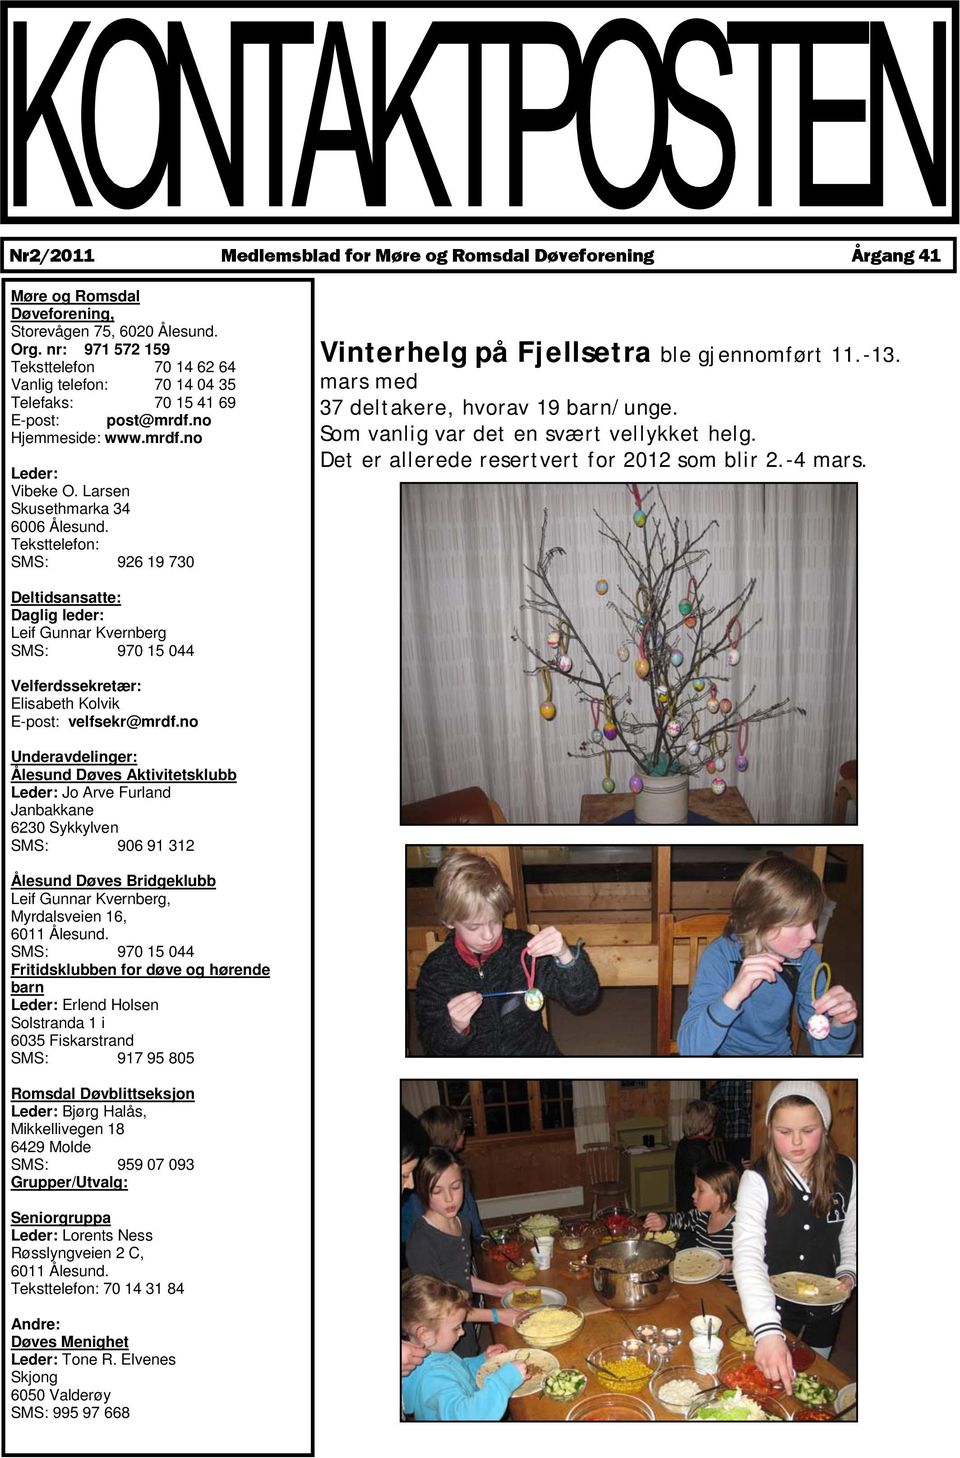 Teksttelefon: SMS: 926 19 730 Vinterhelg på Fjellsetra ble gjennomført 11.-13. mars med 37 deltakere, hvorav 19 barn/unge. Som vanlig var det en svært vellykket helg.